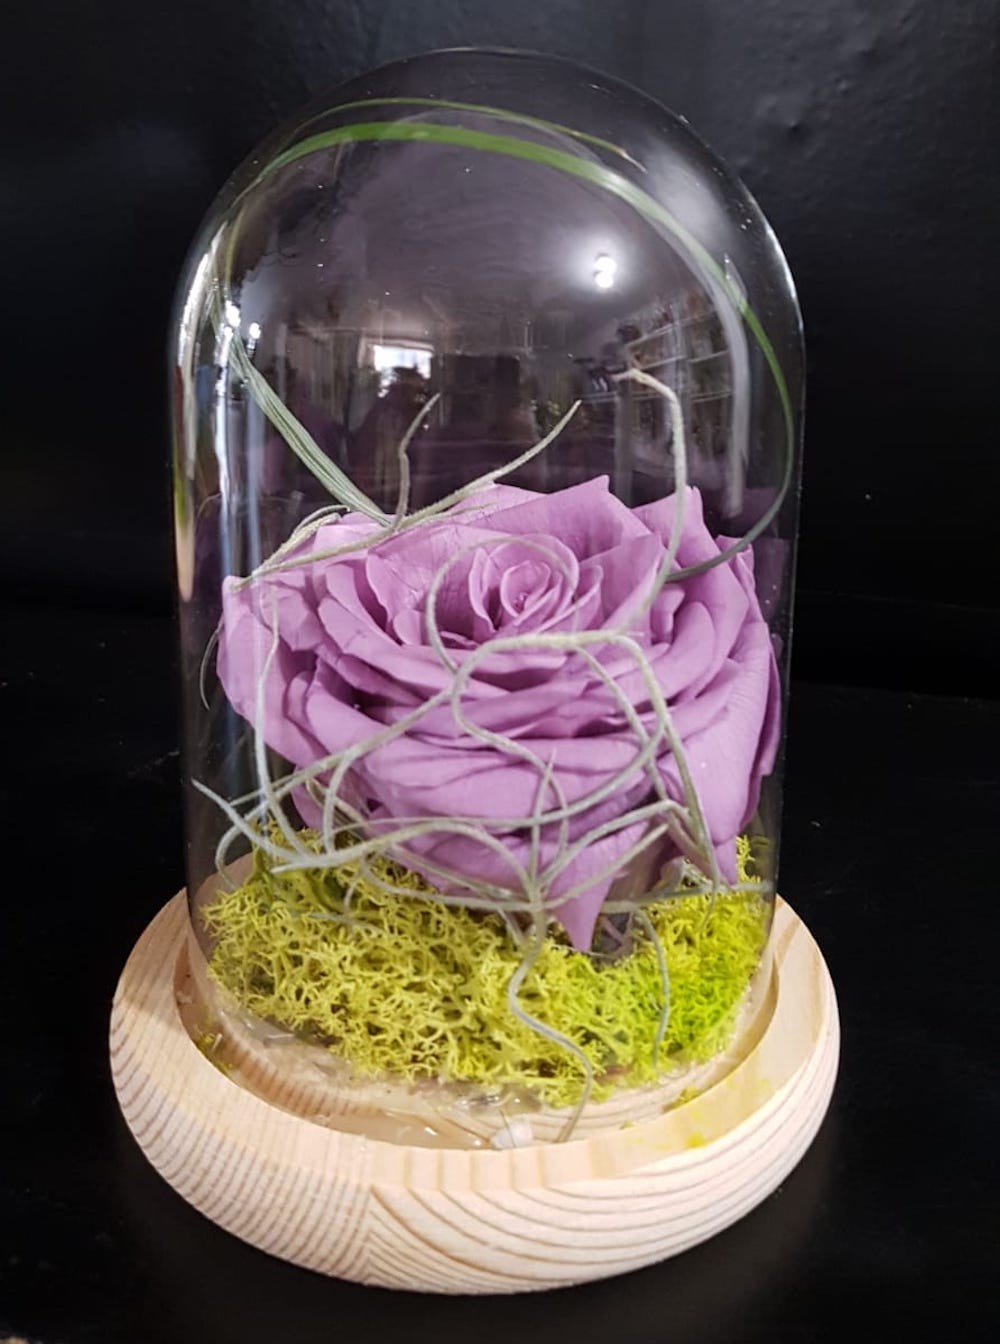 Comanda online trandafir criogenat lila in cupola de sticla, pret special!